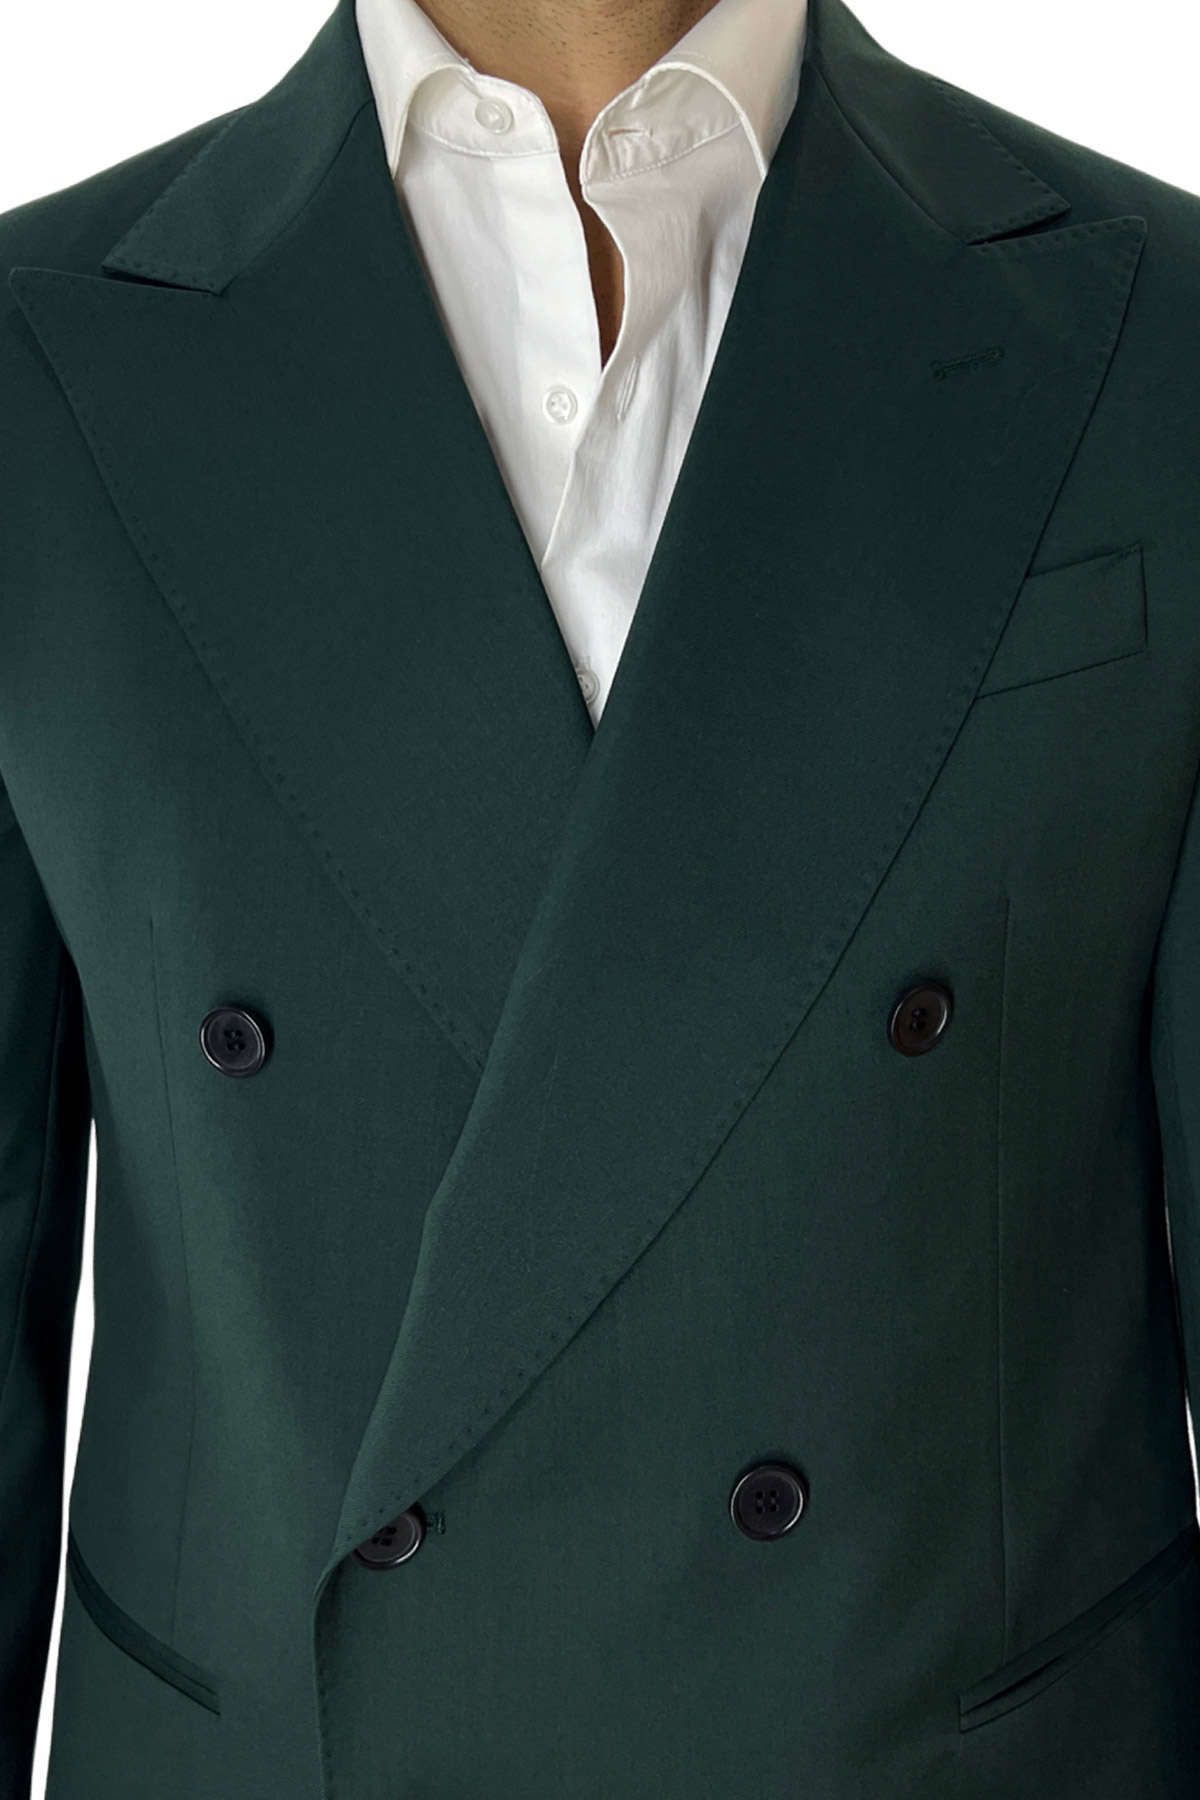 Abito uomo con giacca doppiopetto verde bottiglia in fresco lana super 130’s con rever a lancia larga e pantalone vita alta con fibbie